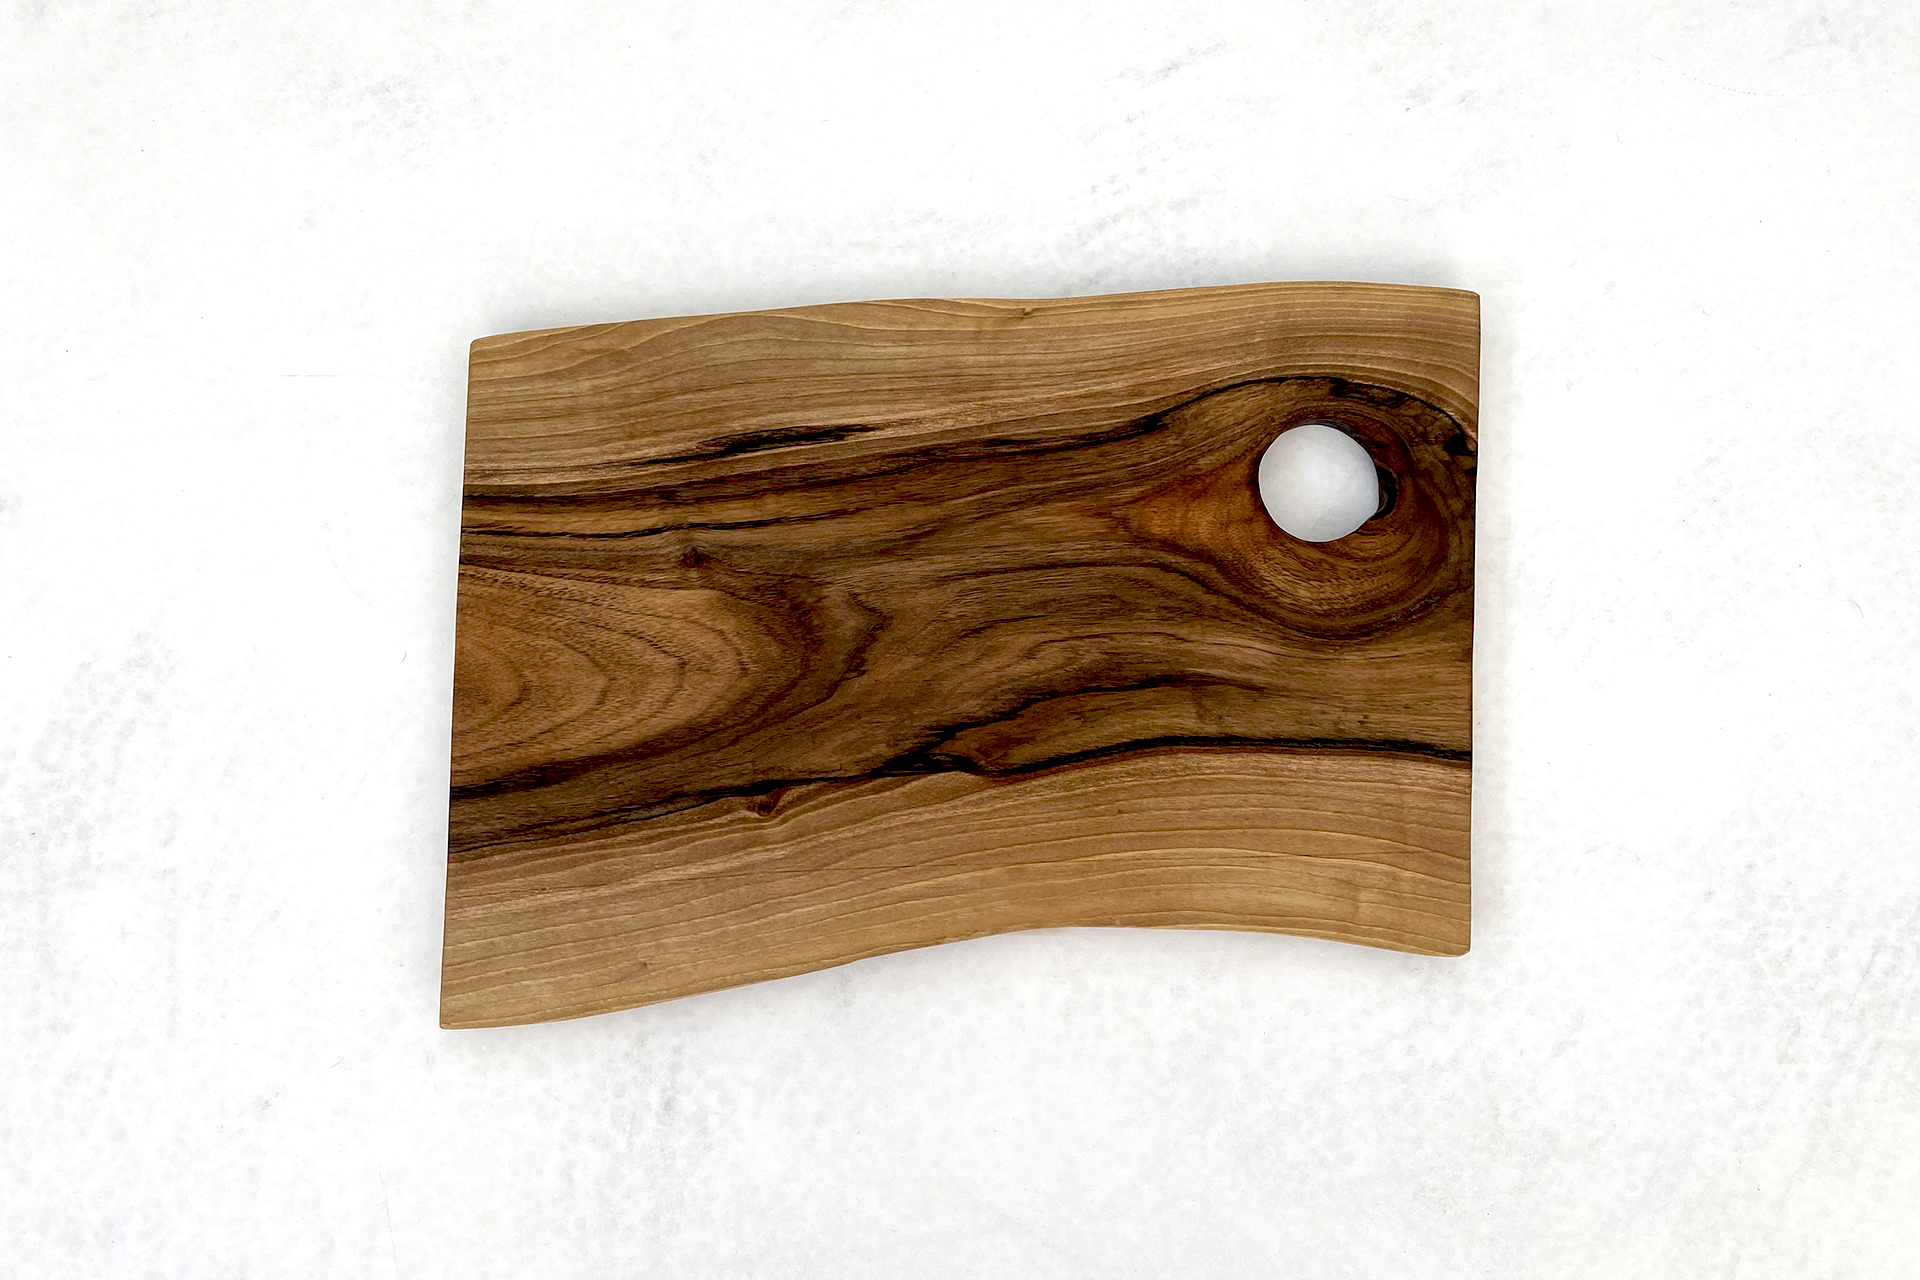 deski do krojenia i serwowania - deska z drewna orzecha włoskiego z okrągłym otworem